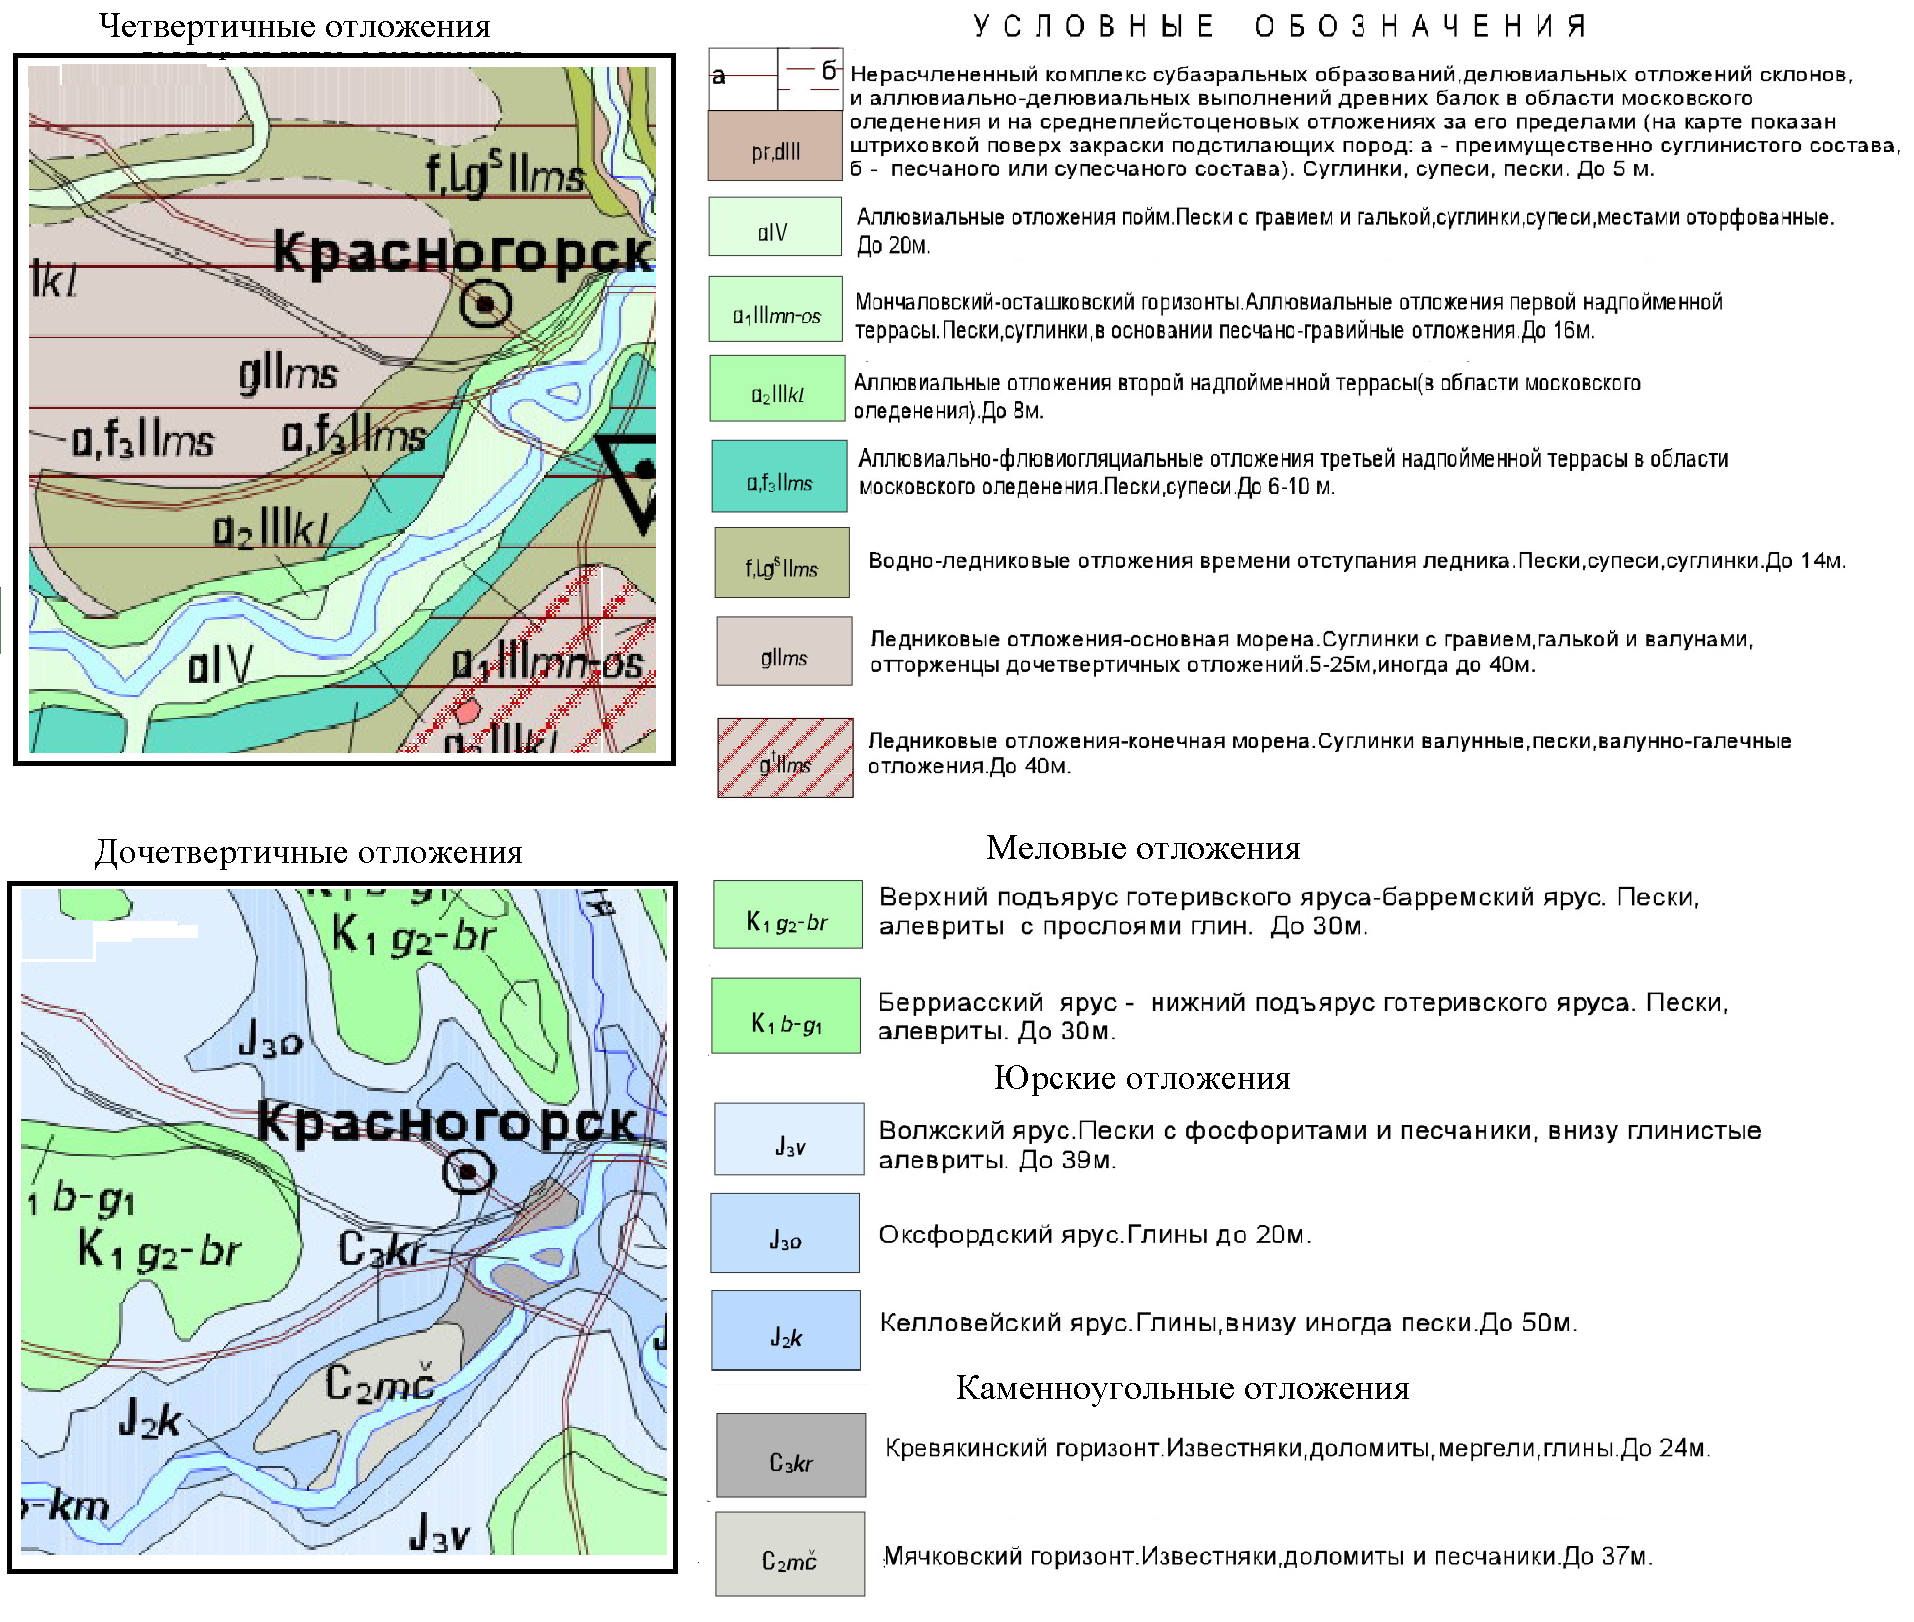 Внизу под глинистым. Геологическая карта Москвы четвертичных отложений. Геология четвертичных отложений. Карта четвертичных отложений 1. Геологический разрез Красногорск.